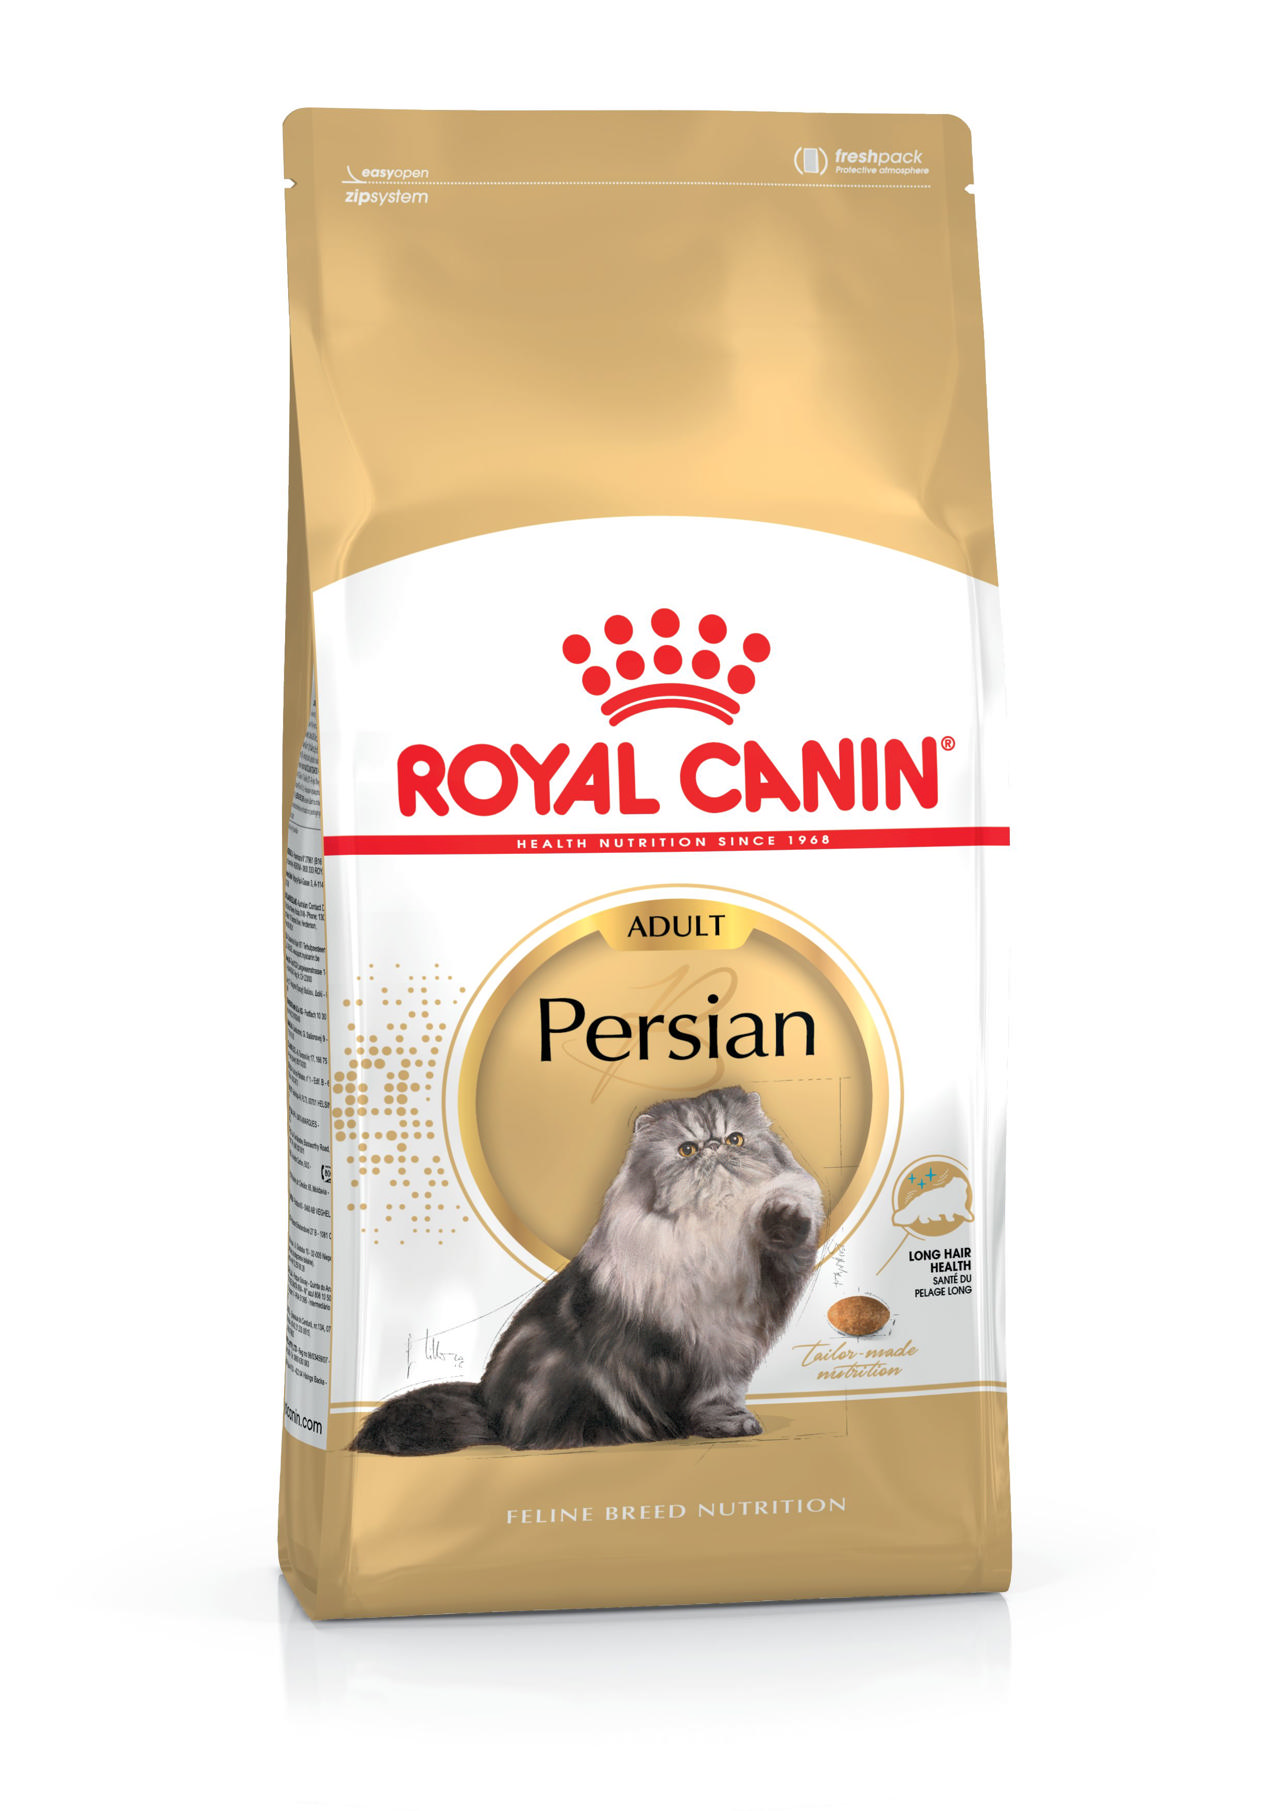 ROYAL CANIN PERSIAN 4KG